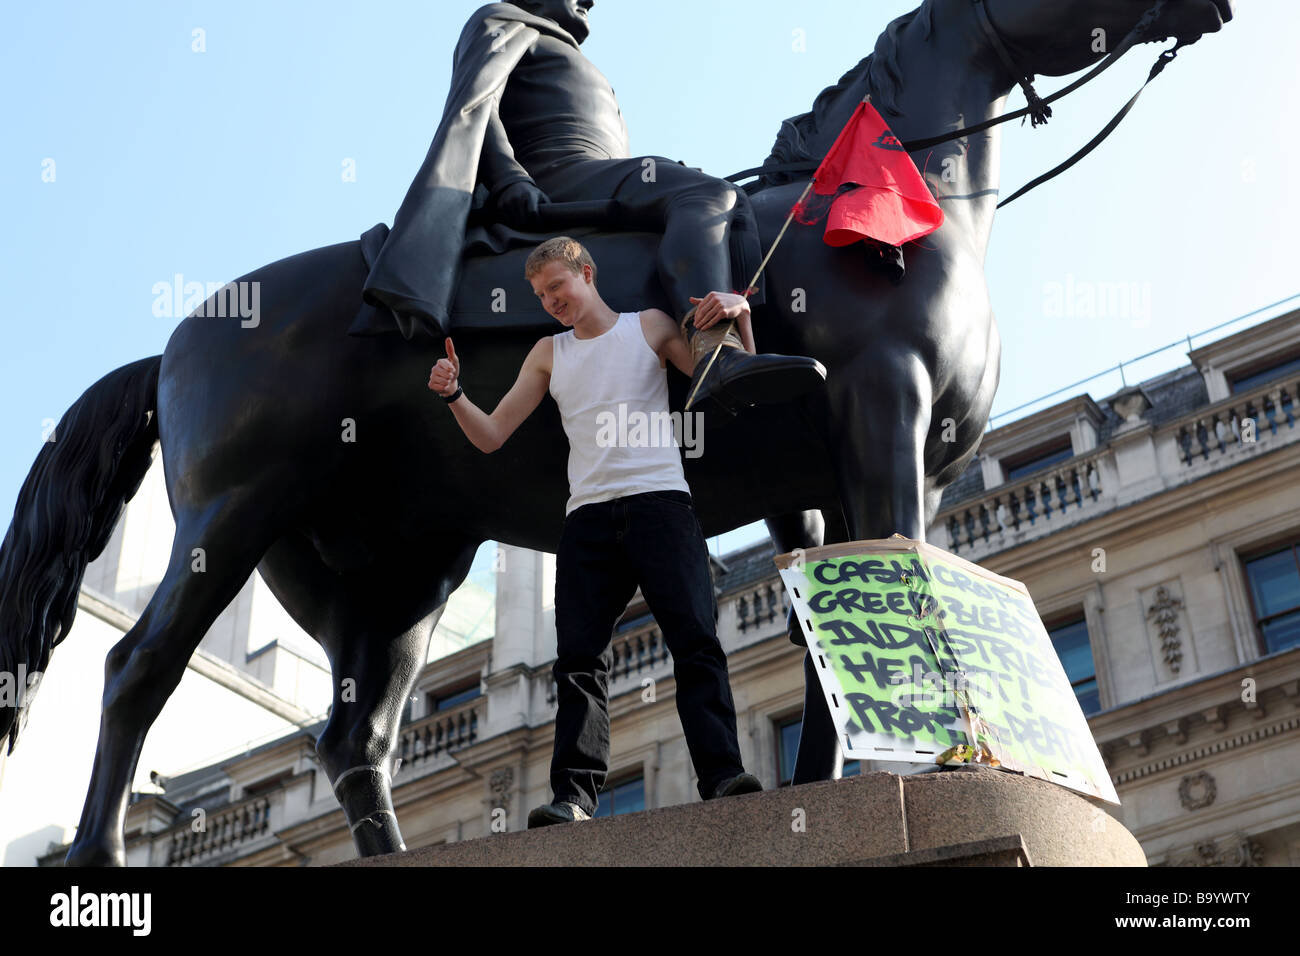 Manifestant sur l'extérieur de la statue Banque d'Angleterre pendant le sommet du G20 de 2009, Londres, Royaume-Uni. Banque D'Images